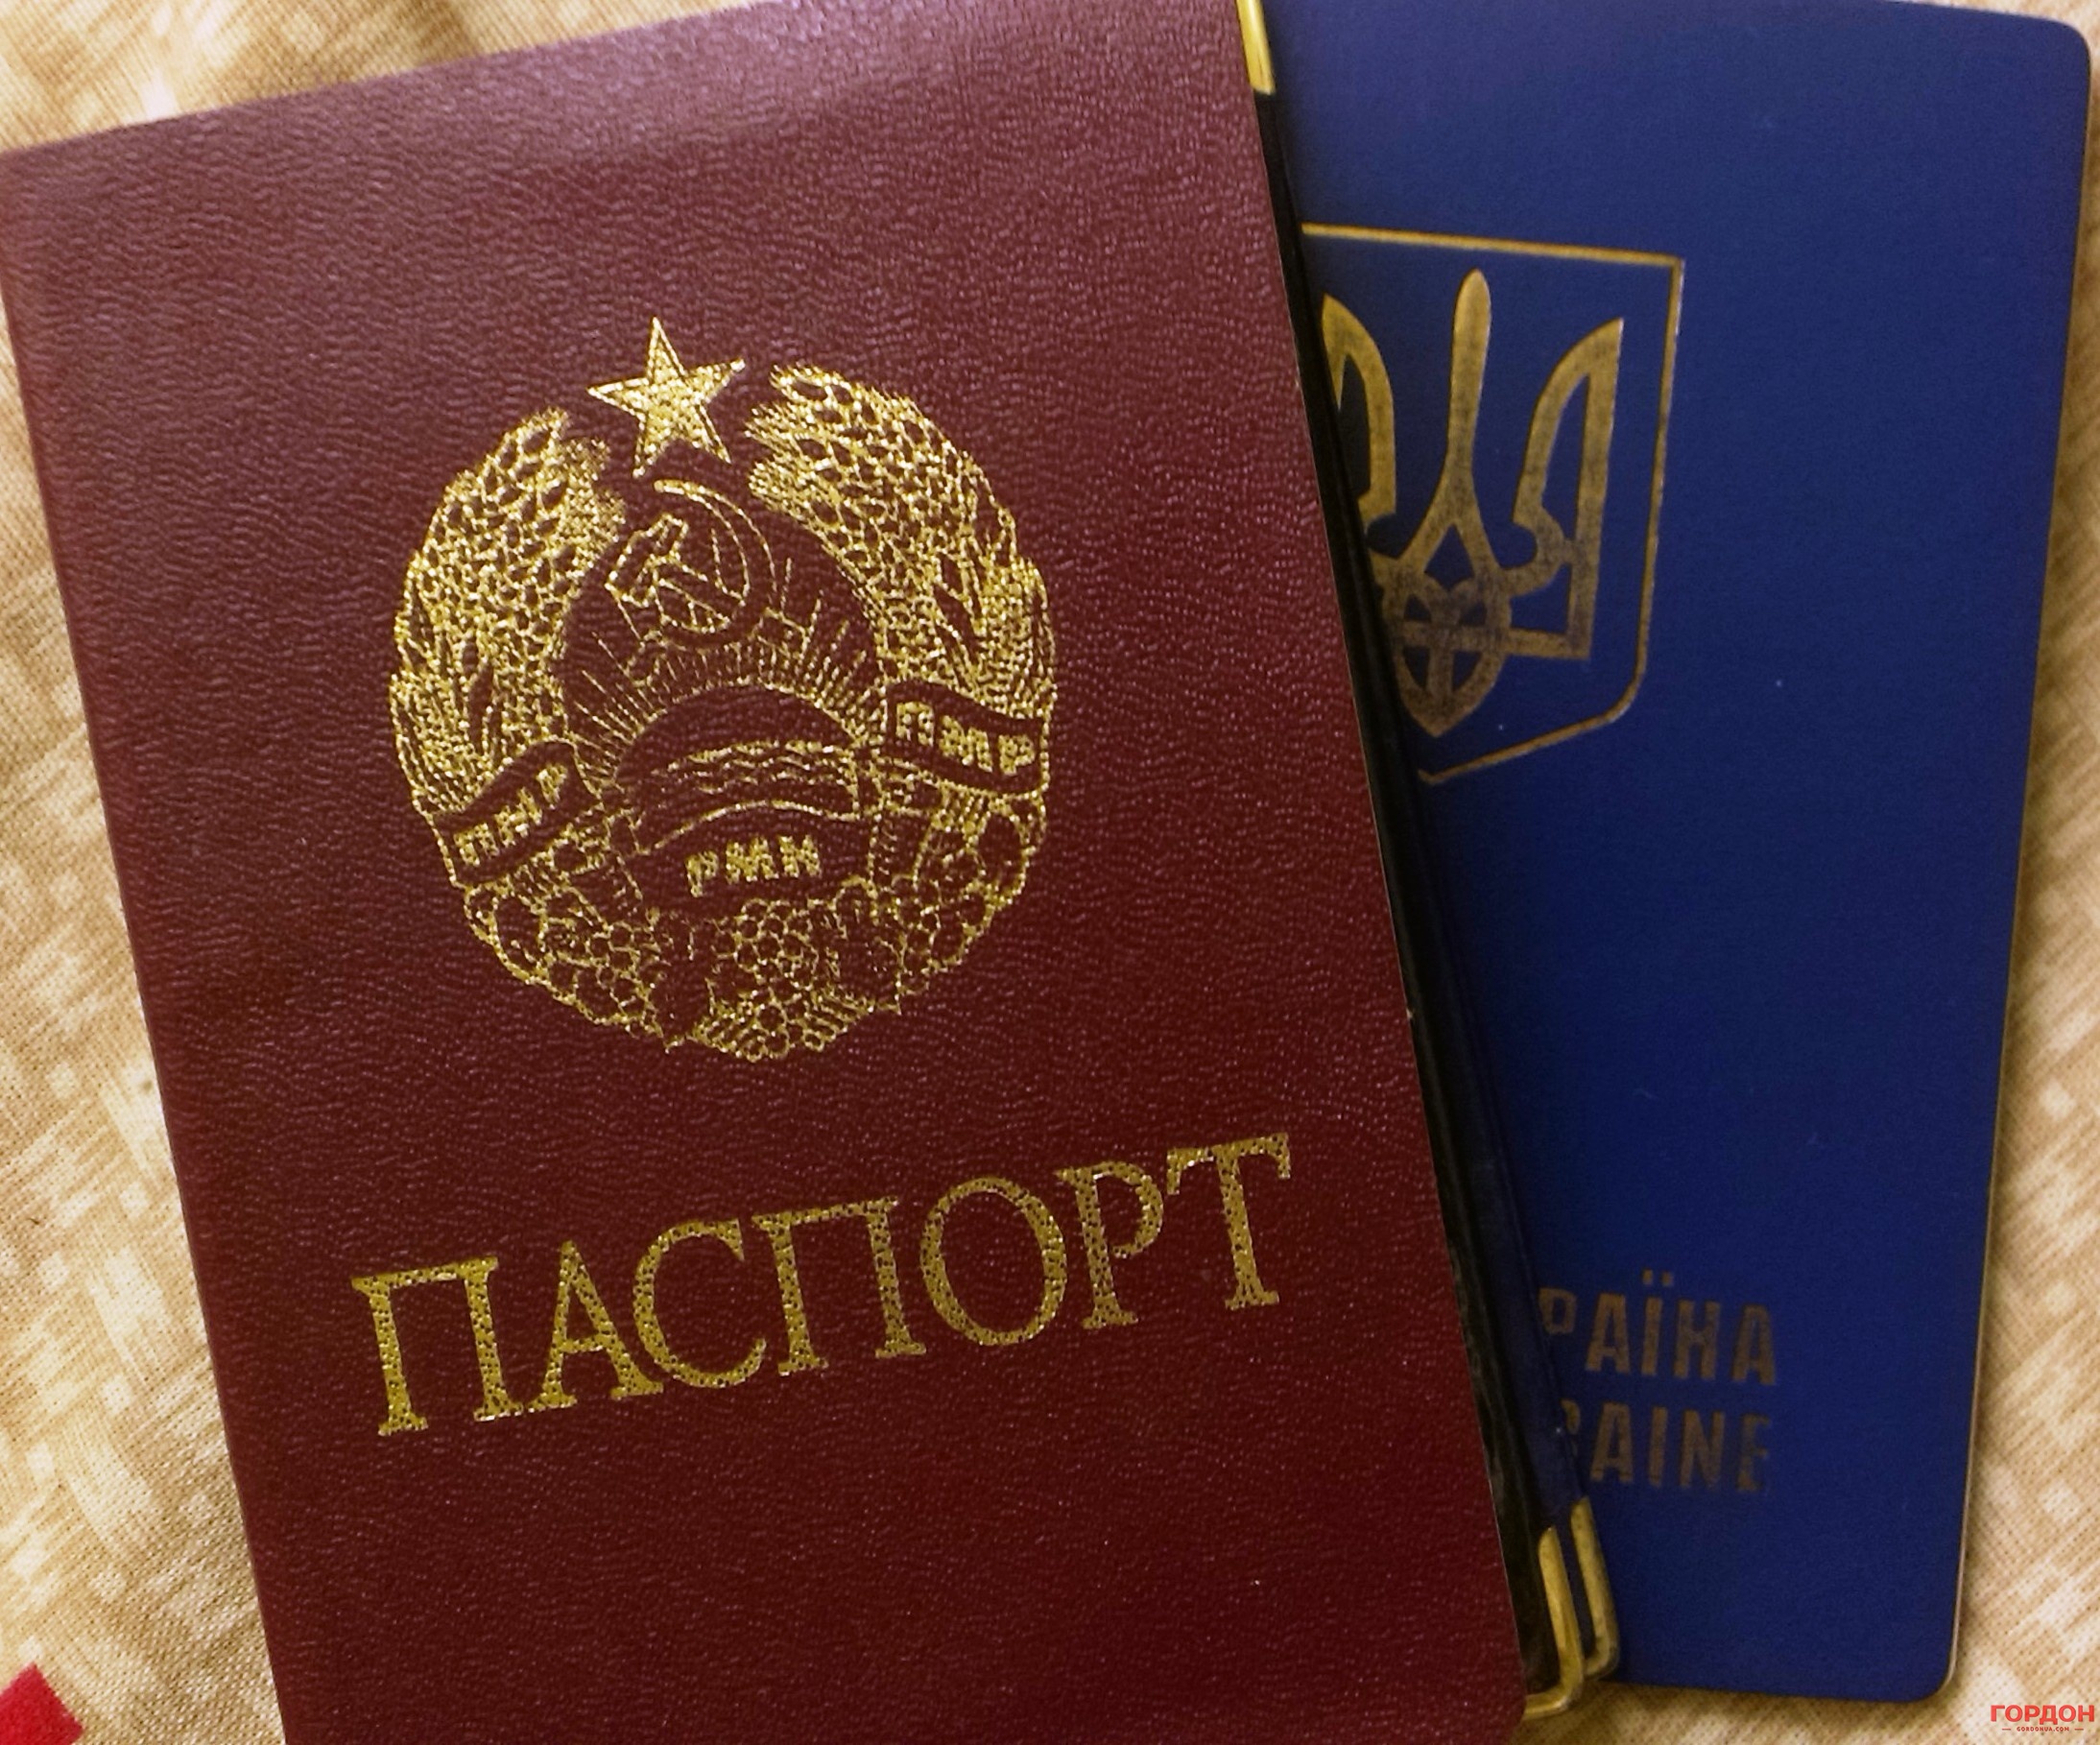 С приднестровским паспортом выехать за границу невозможно, поэтому жители ПМР получают паспорта России, Молдовы или Украины. Фото: Мирослава Заец / Gordonua.com